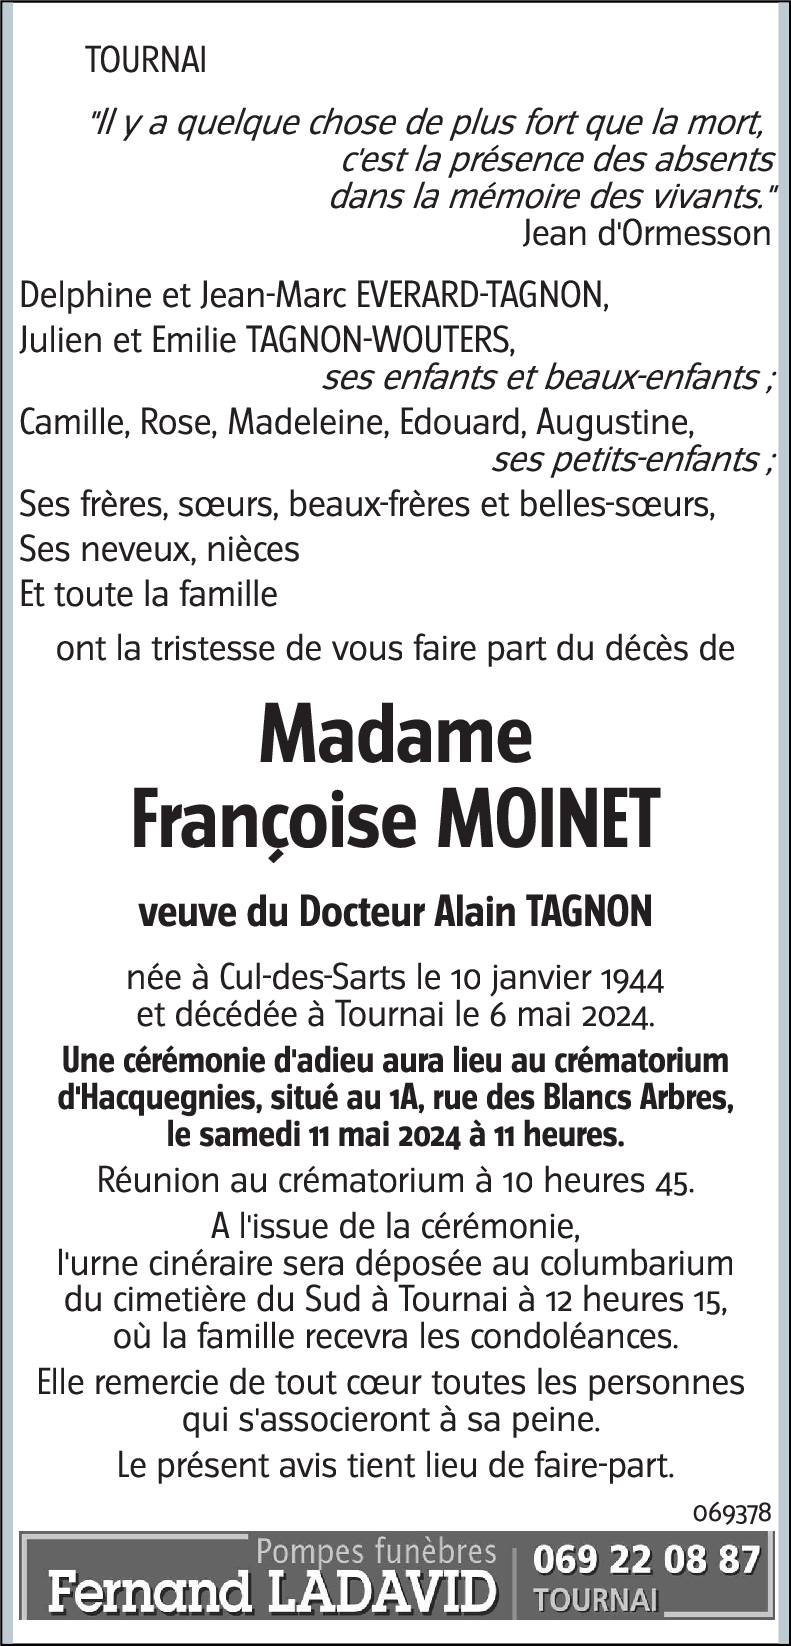 Françoise MOINET